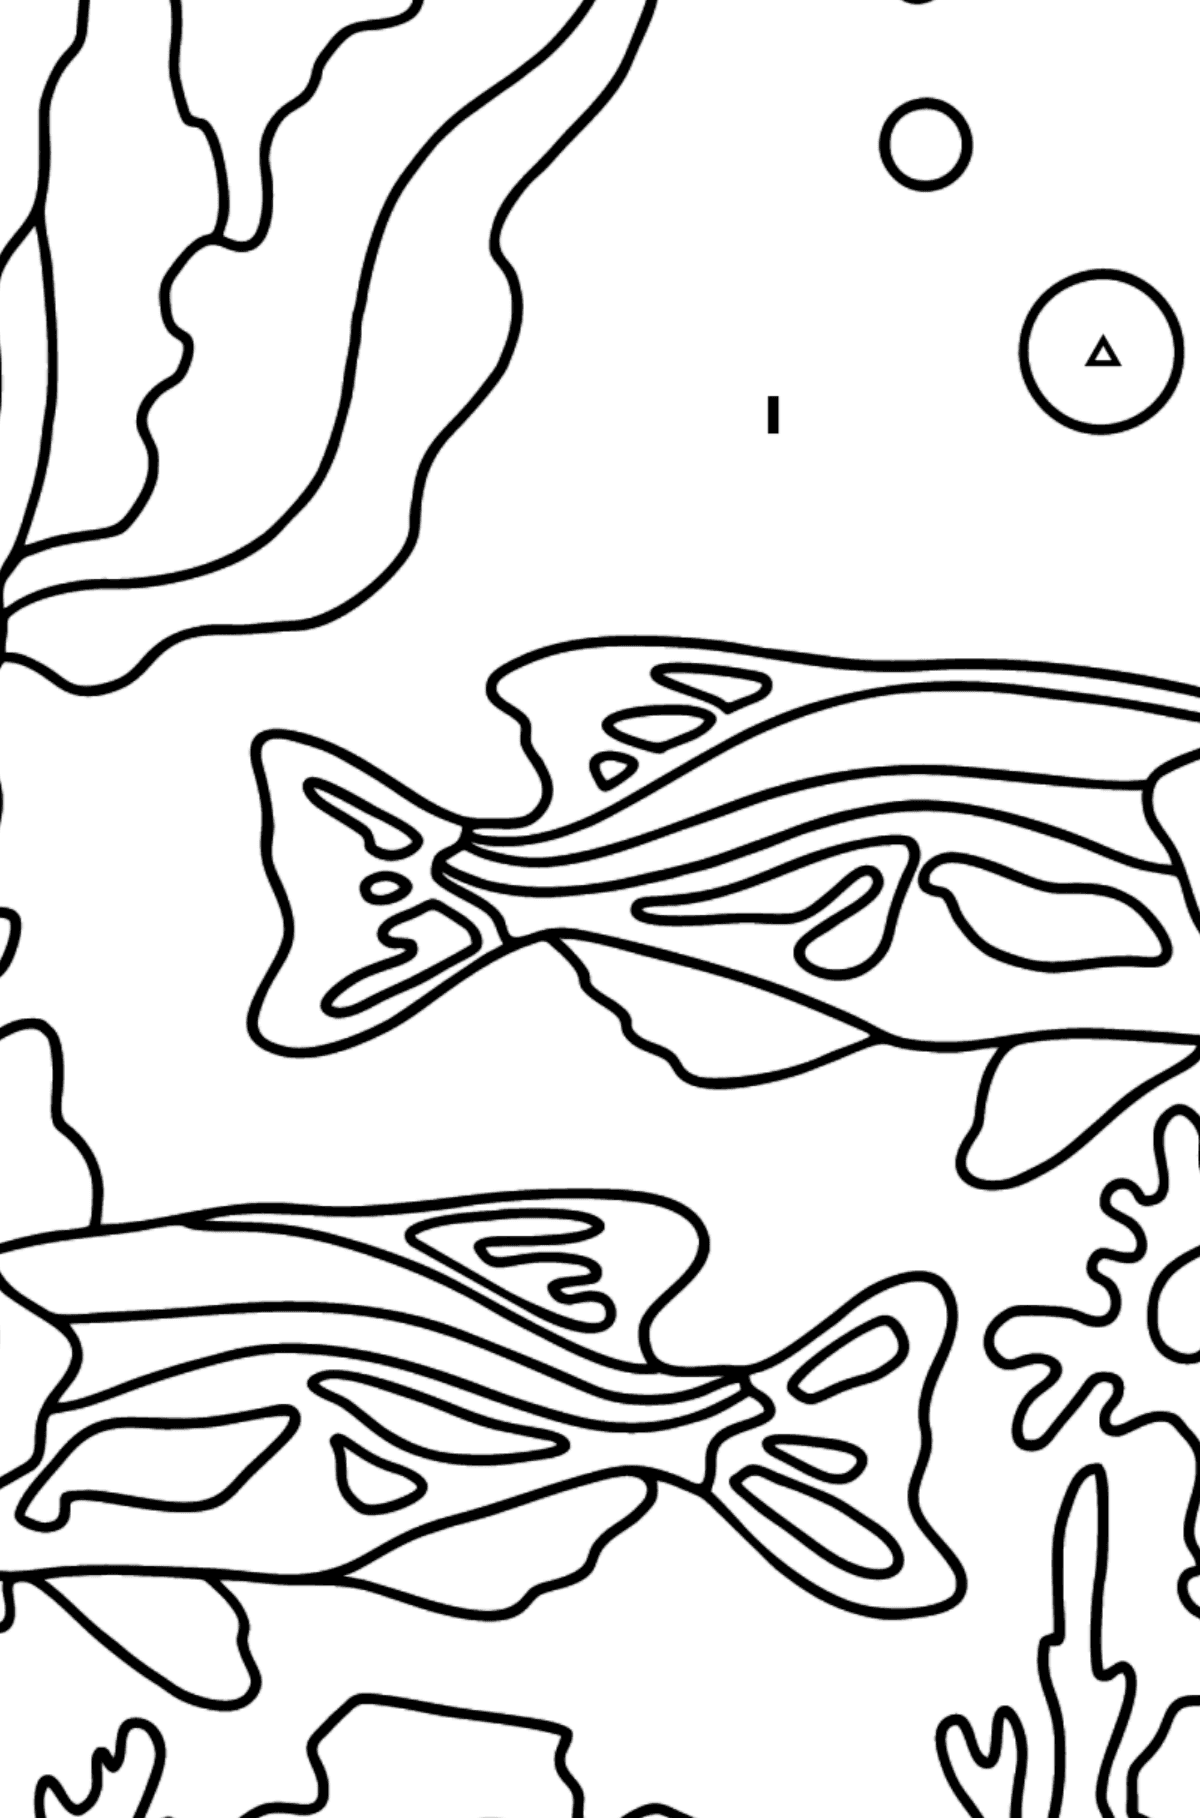 Tegning til fargelegging fisketank (enkelt) - Fargelegge etter symboler for barn